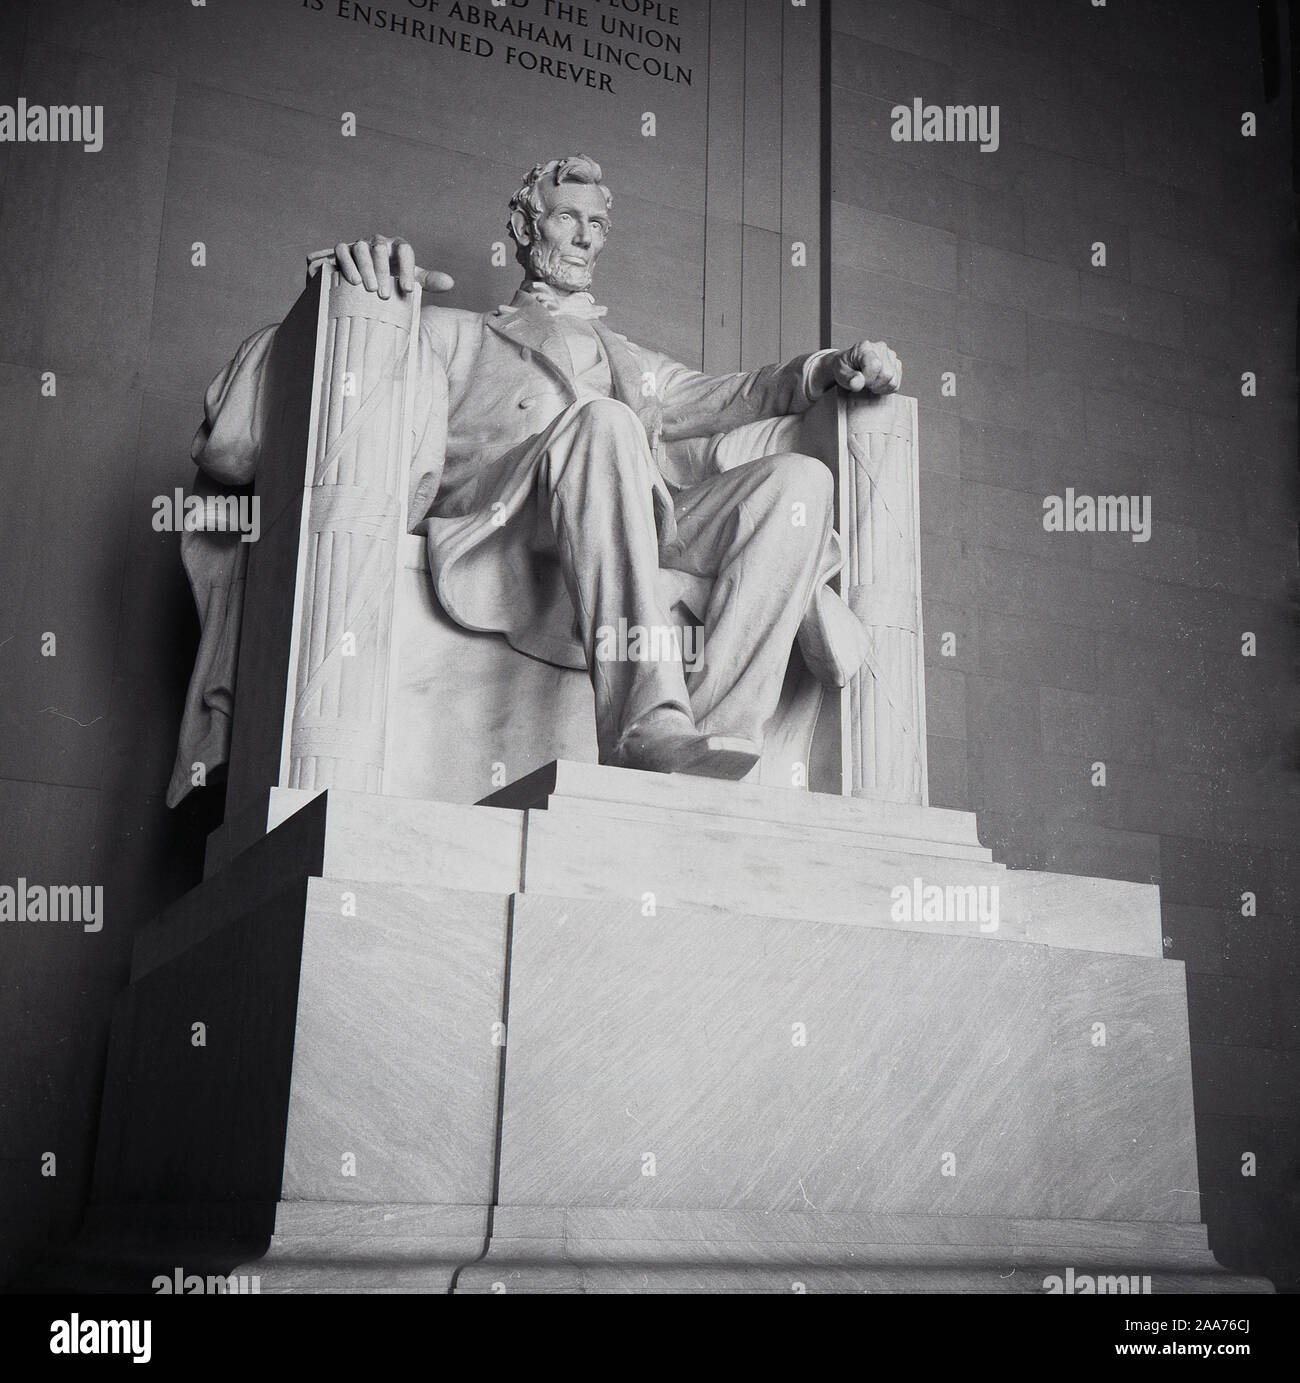 1960, historische, die sitzende Figur von Abraham Lincoln in Washington DC, USA. Im Georgischen Marmor von Daniel Chester French 1920 modelliert, die große 170-Tonnen schwere Statue sitzt in dem Lincoln Memorial. Stockfoto